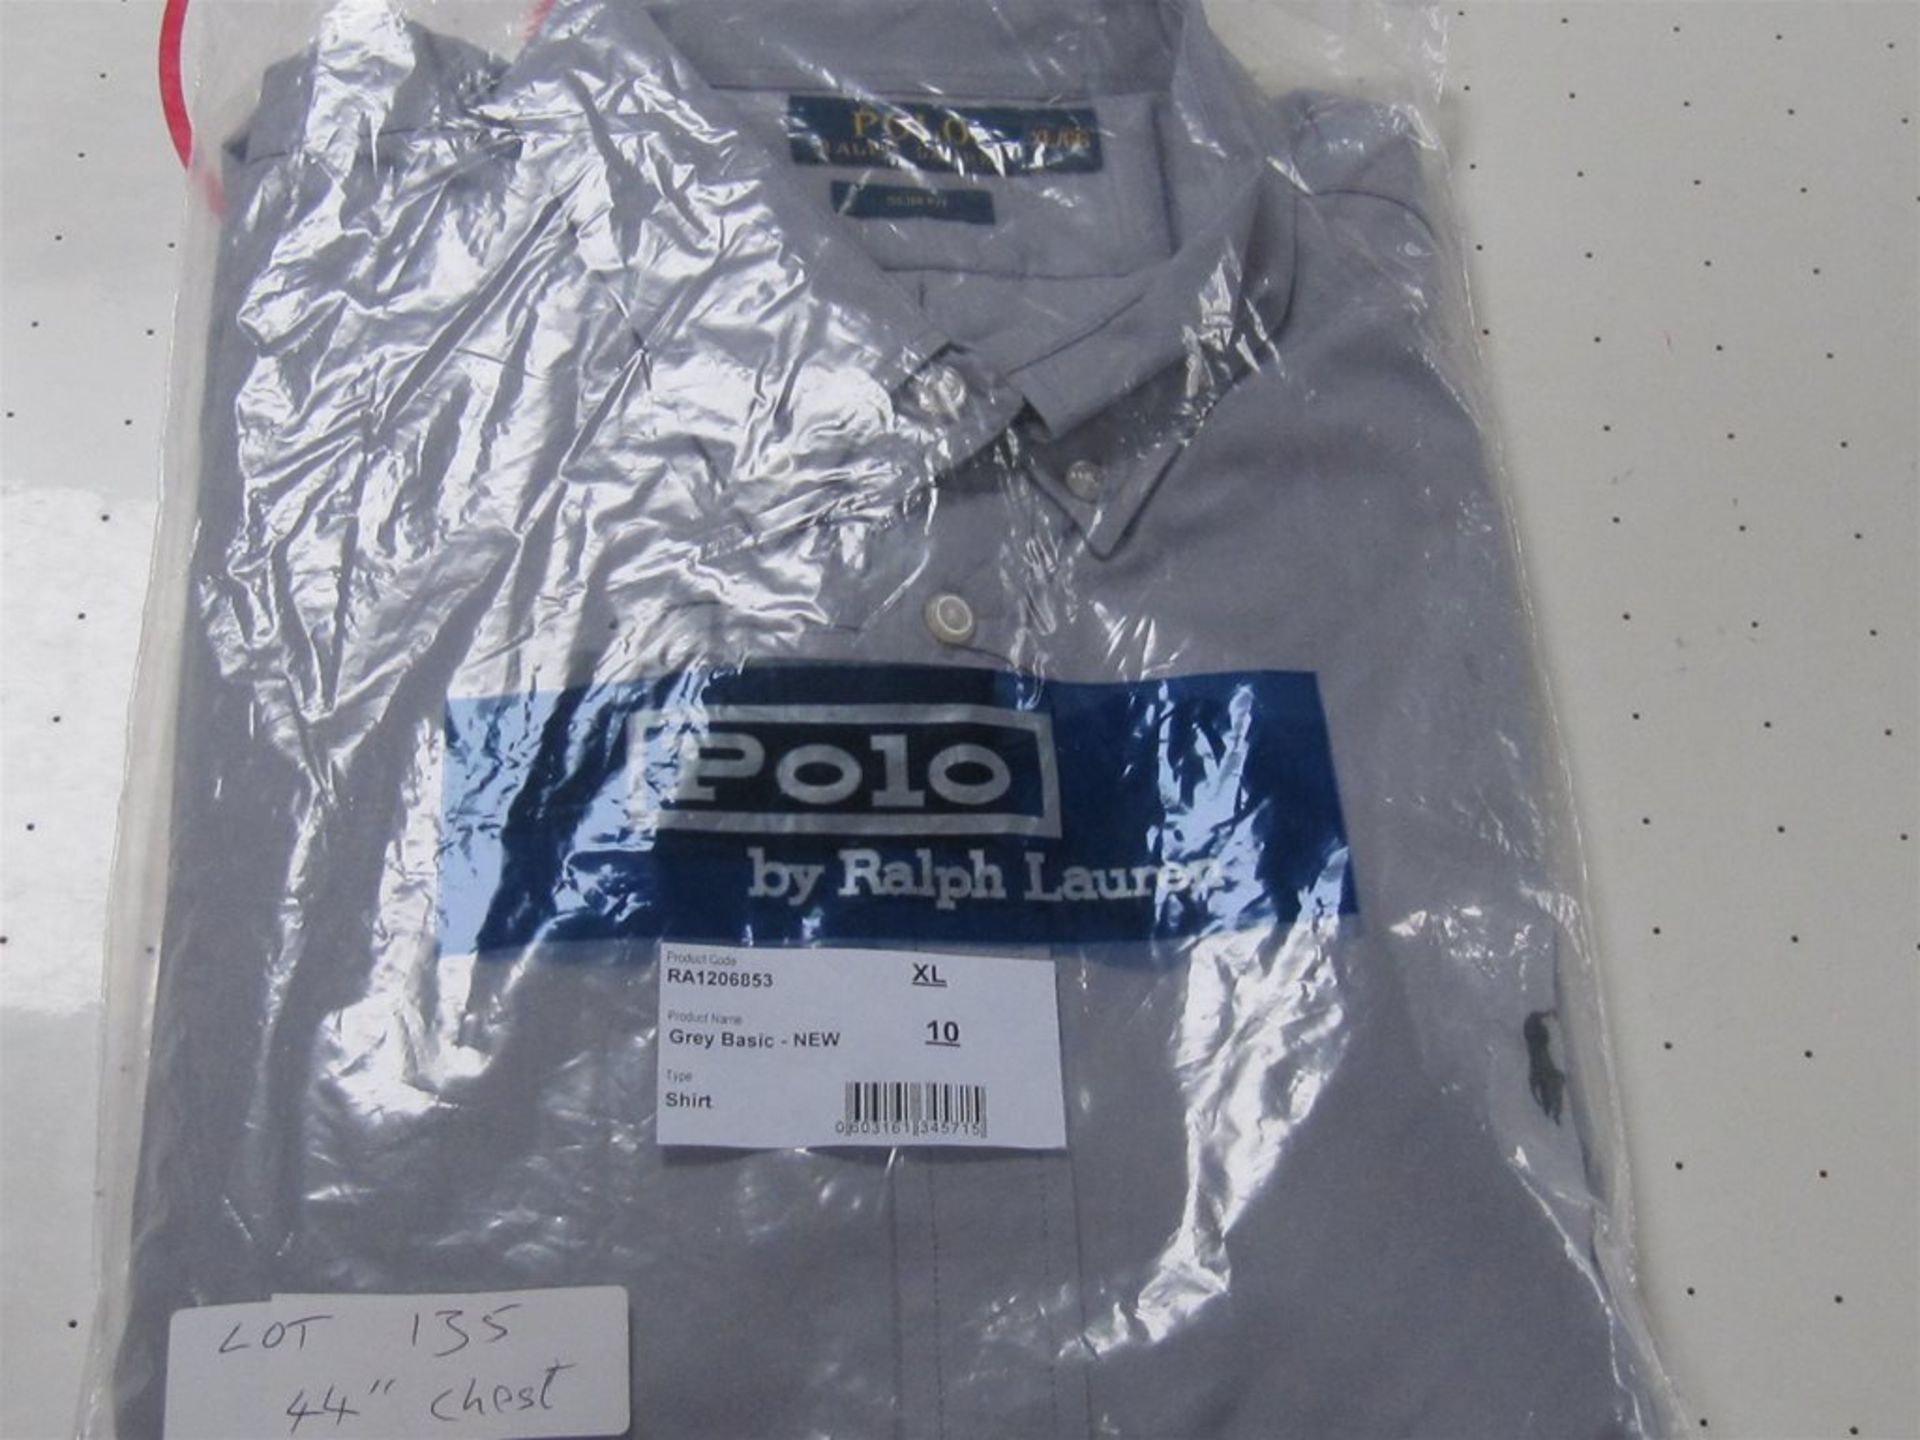 Ralph Lauren Shirt. Grey. Free Shipping when you Win 2 Lots or more.